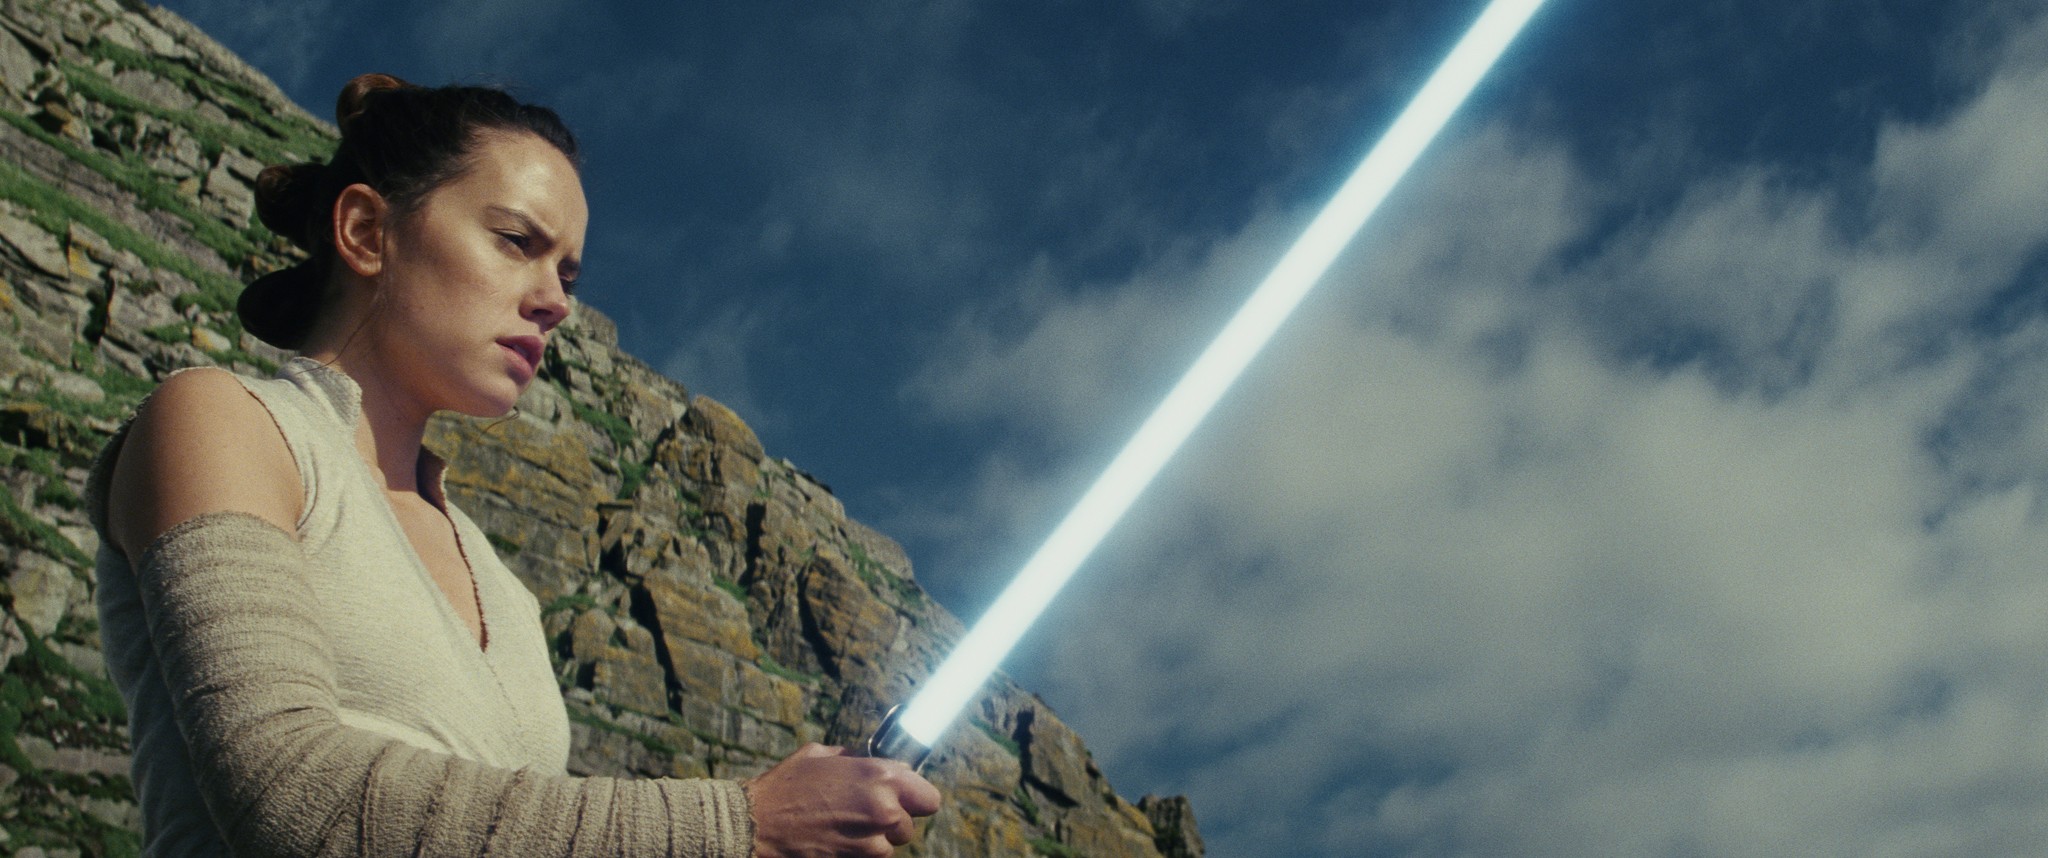 Rey com o sabre de luz de Luke Skywalker (Foto: Divulgação)